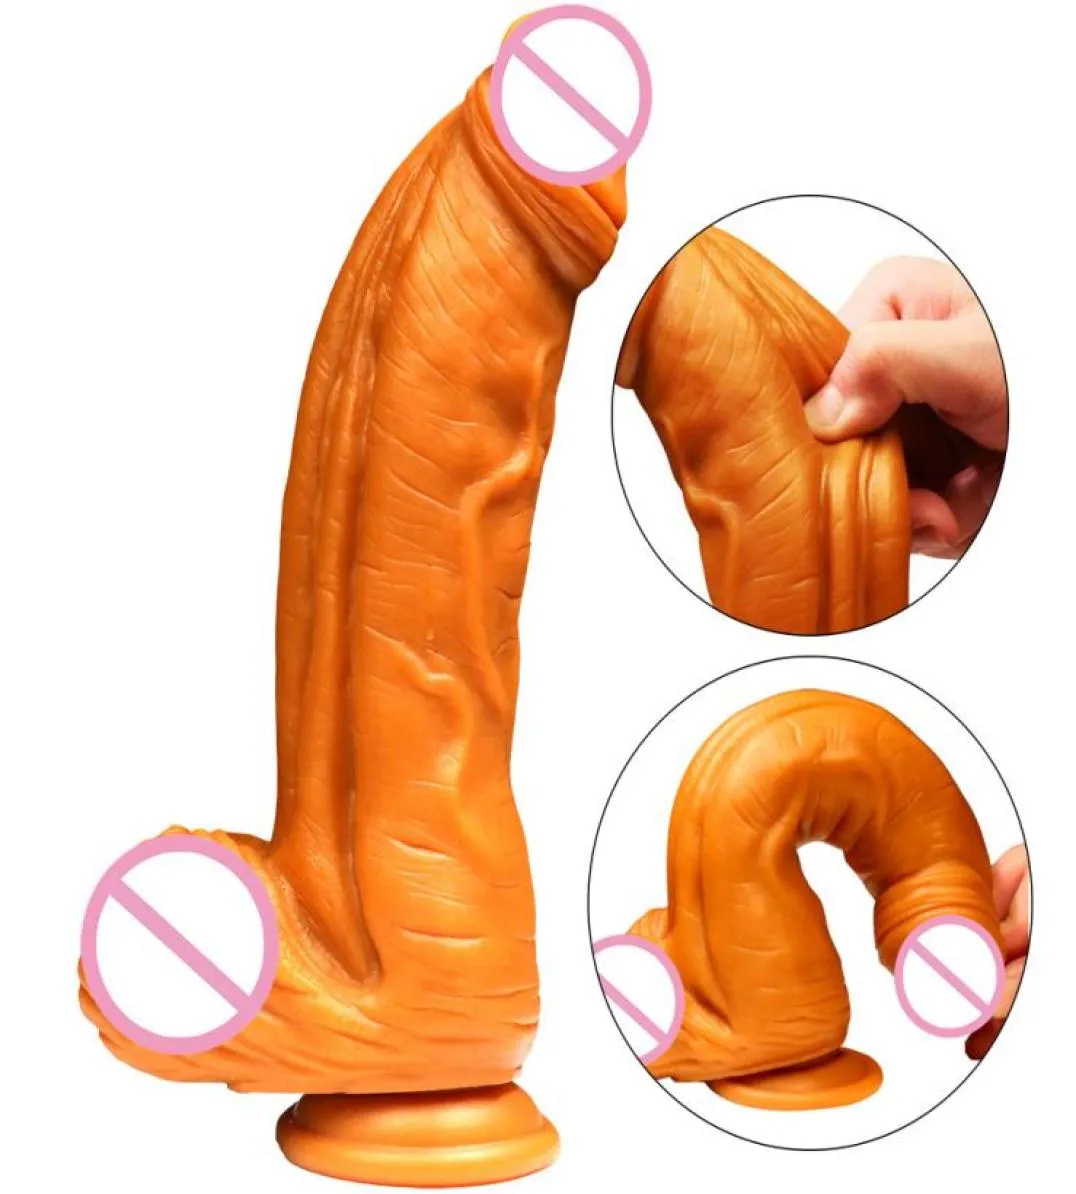 Realistiska dildos med sugkopp mjuk gyllene stora stora peins vagina onani stimulering sexleksaker för kvinna64452437992019